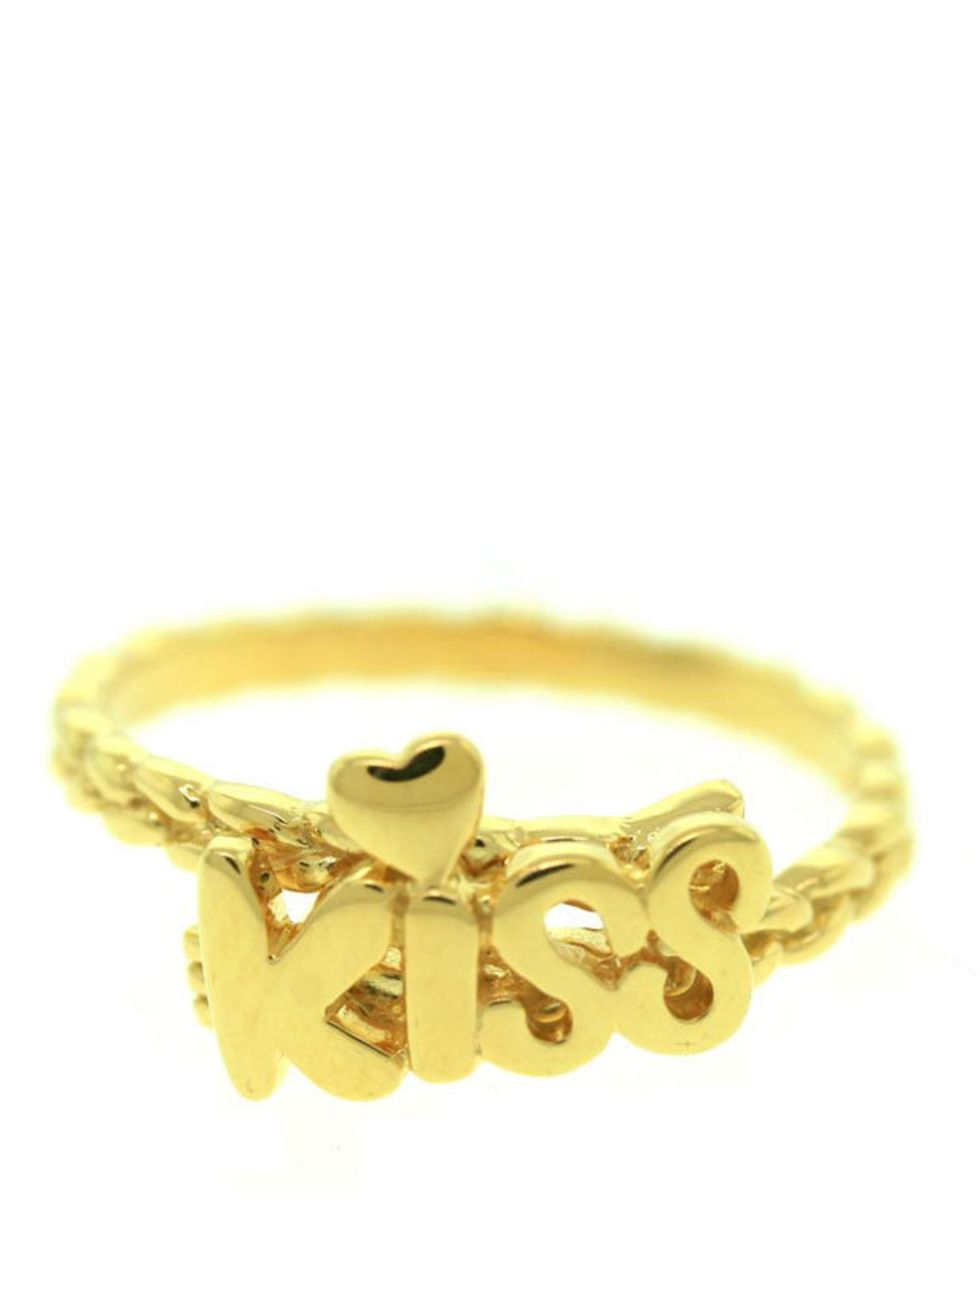 <p>Matina Amanita 'Kiss' ring, £74, at <a href="http://www.kabiri.co.uk/designers/matina-amanita/kiss-ring.html">Kabiri</a></p>